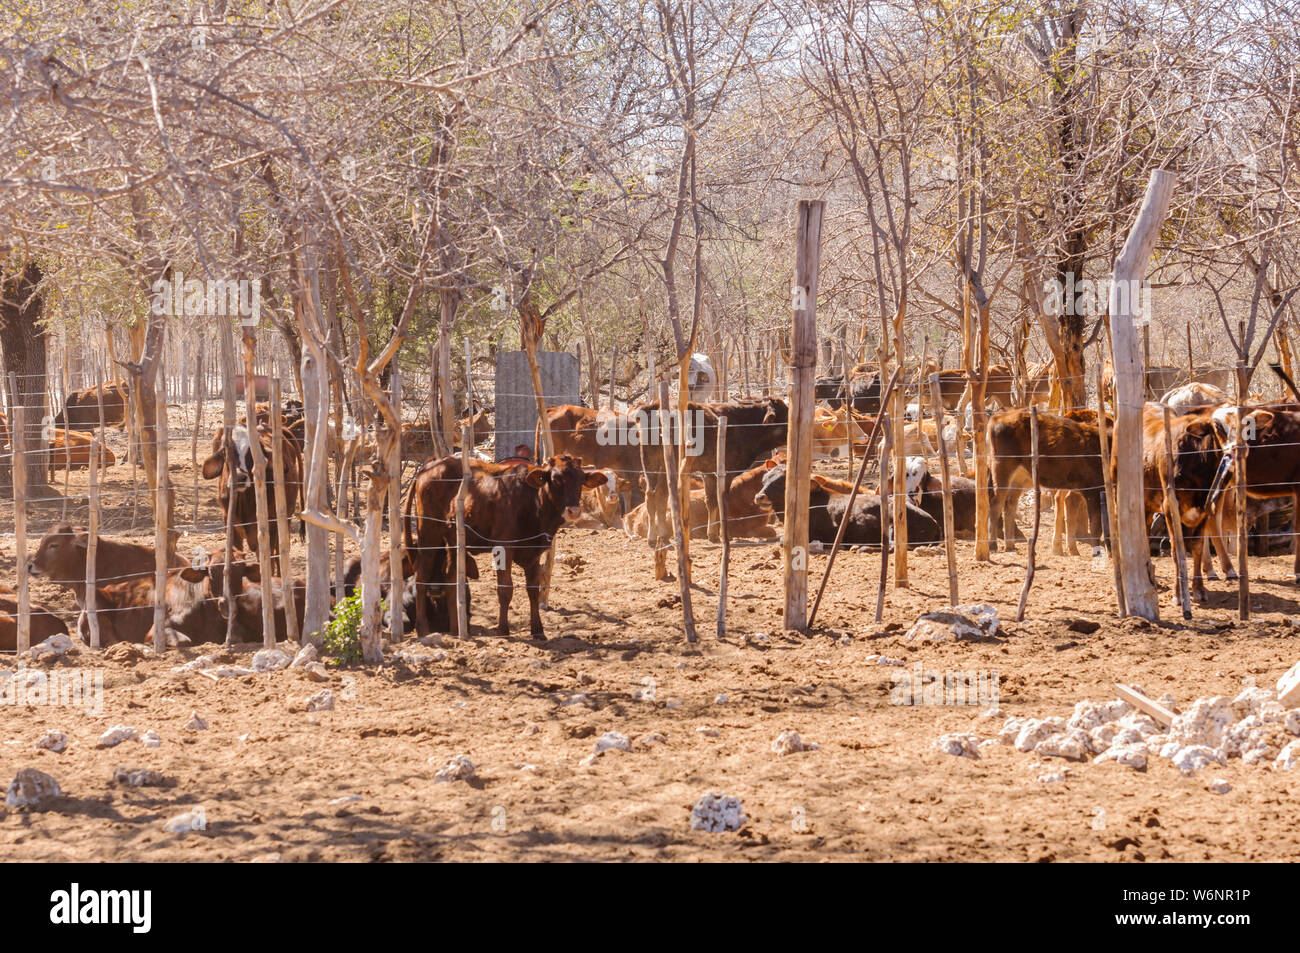 Troupeau de bovins longicorne africain dans un boîtier, dans une ferme en Namibie Banque D'Images